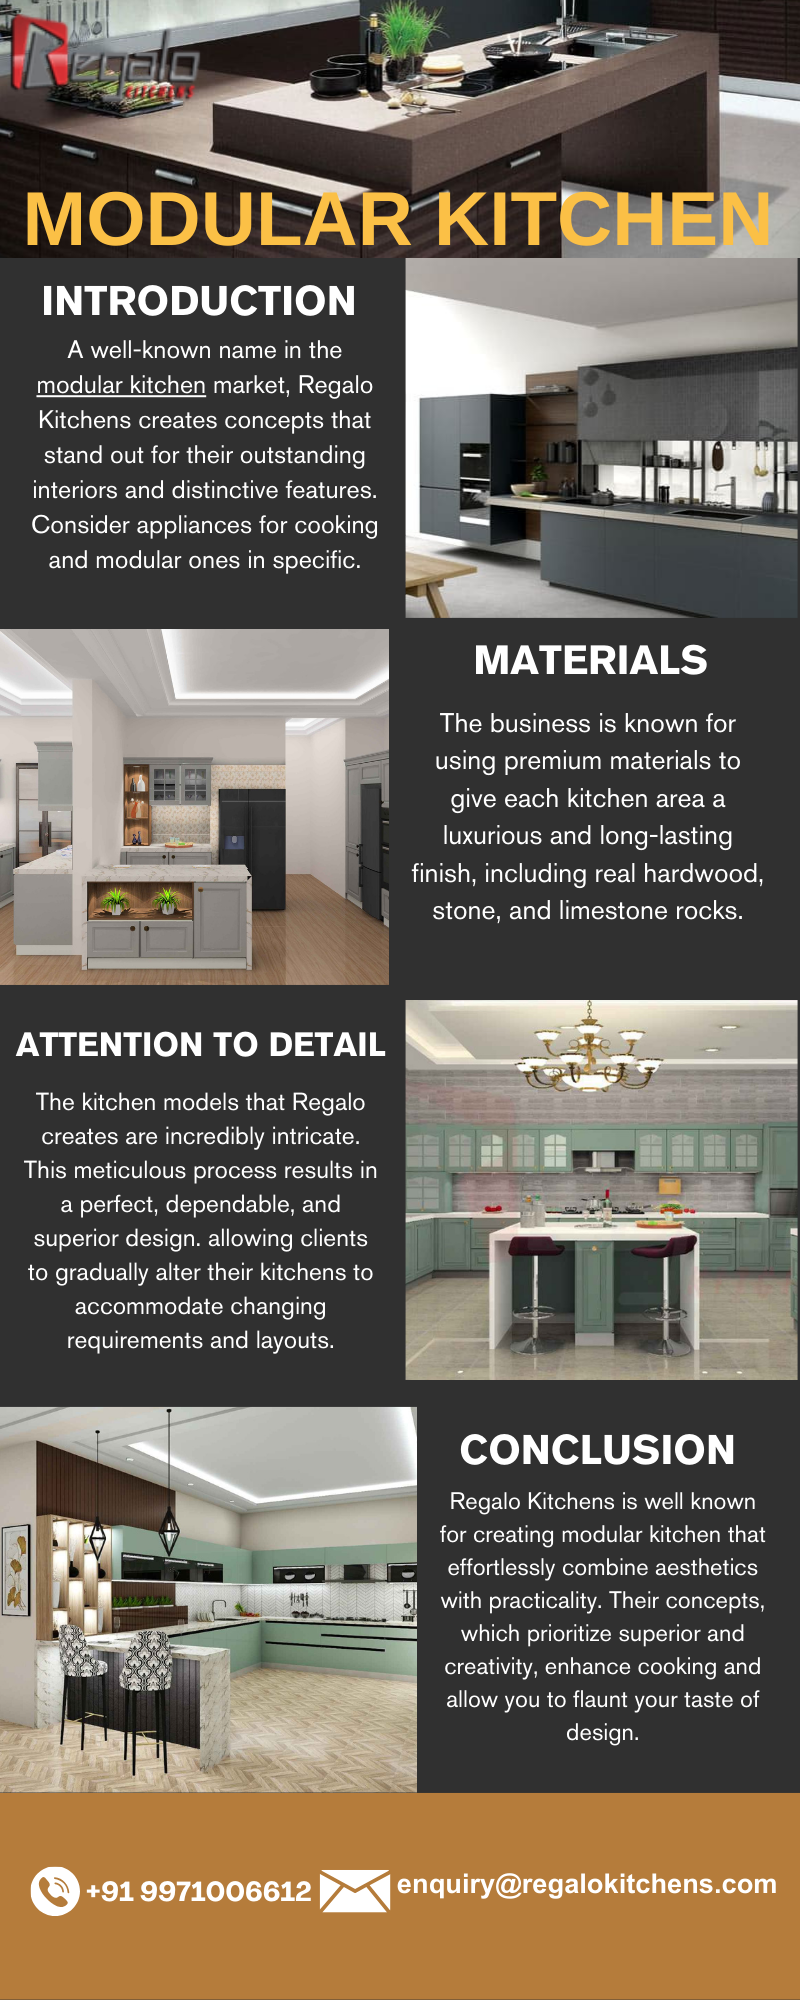 Modular Kitchen Design - Kitchen Design - Medium